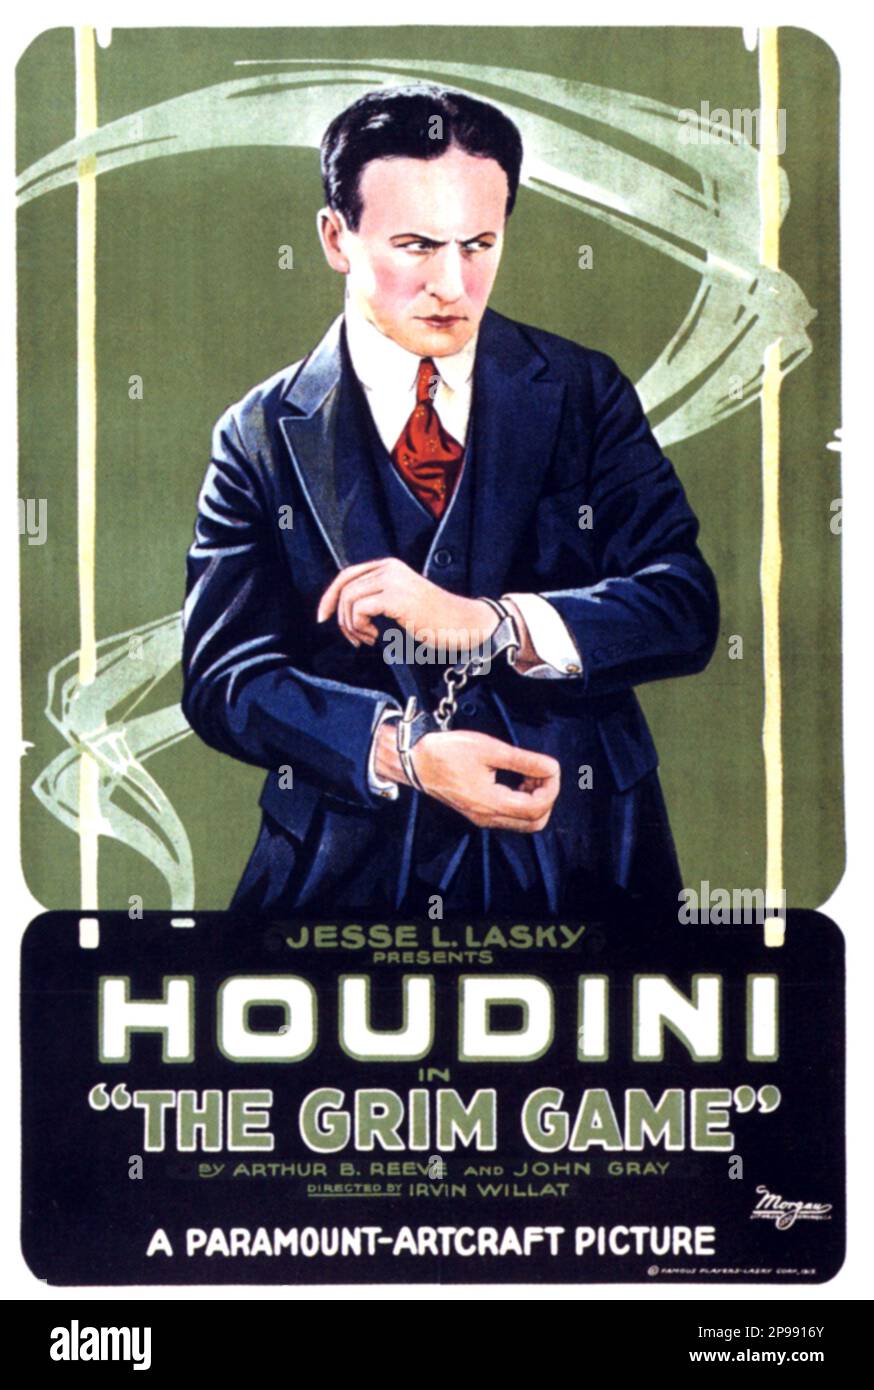 1919  : The most celebrated american magician HARRY HOUDINI ( 1874 - 1926 ) actor in THE GRIM GAME by Arthur B. reeve and John Gray  - Foto storica - historic photos - esperimento - escapologist - escapologism - escapologia - prestigitatore illusionista - ILLUSIONIST - ritratto - portrait  -  MOVIE - CINEMA - FILM - manette  ----   Archivio GBB Stock Photo